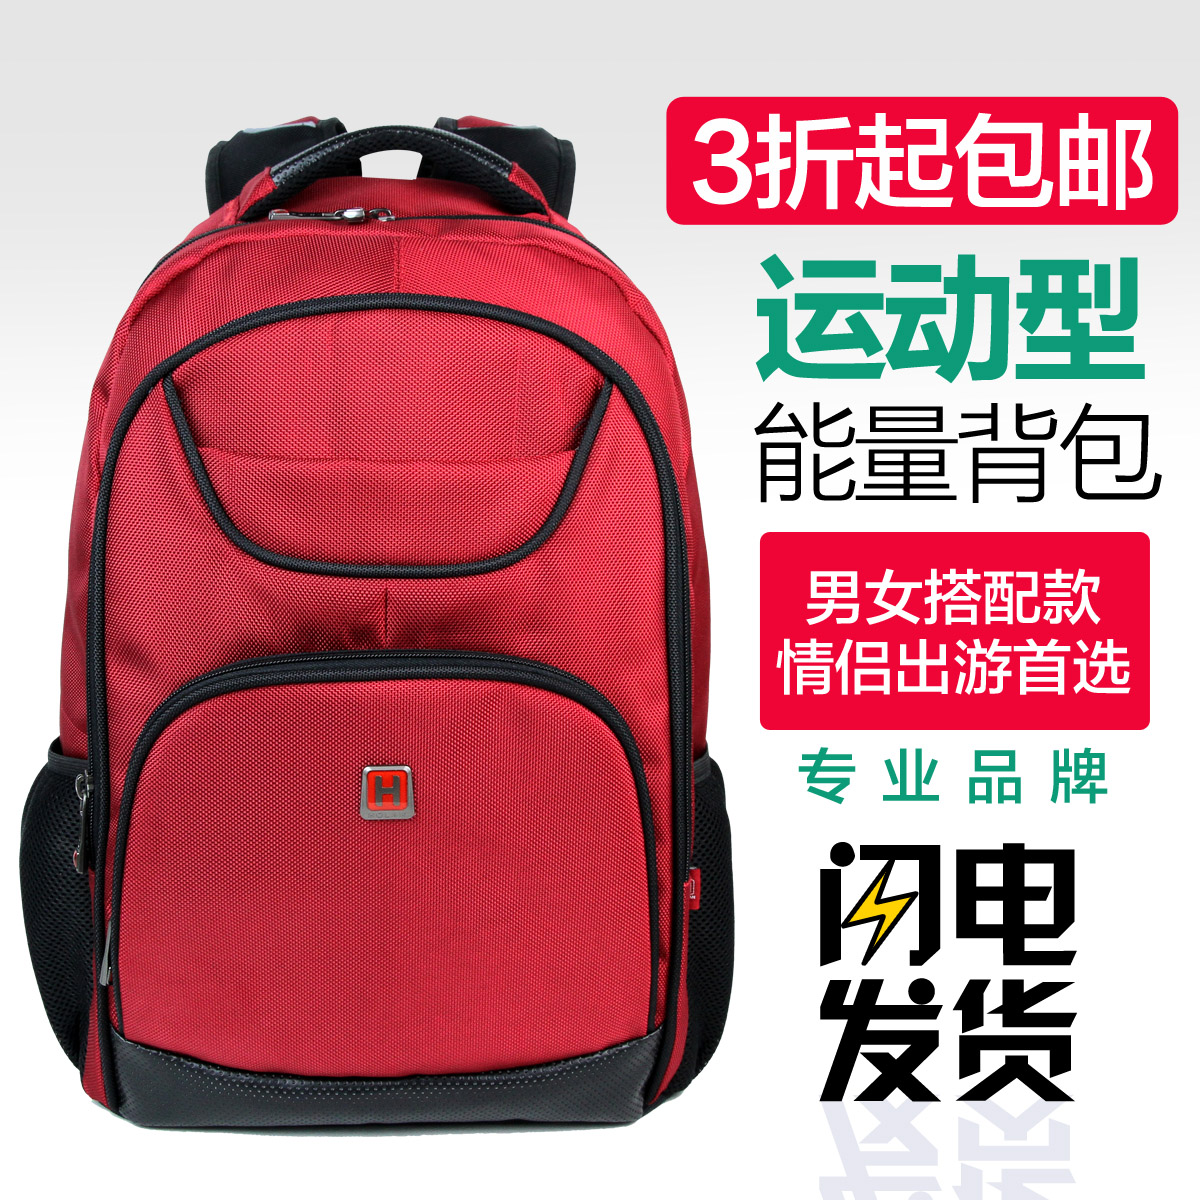 中国质造 男双肩包大容量旅行包休闲双肩包男旅游背包女潮中学生折扣优惠信息